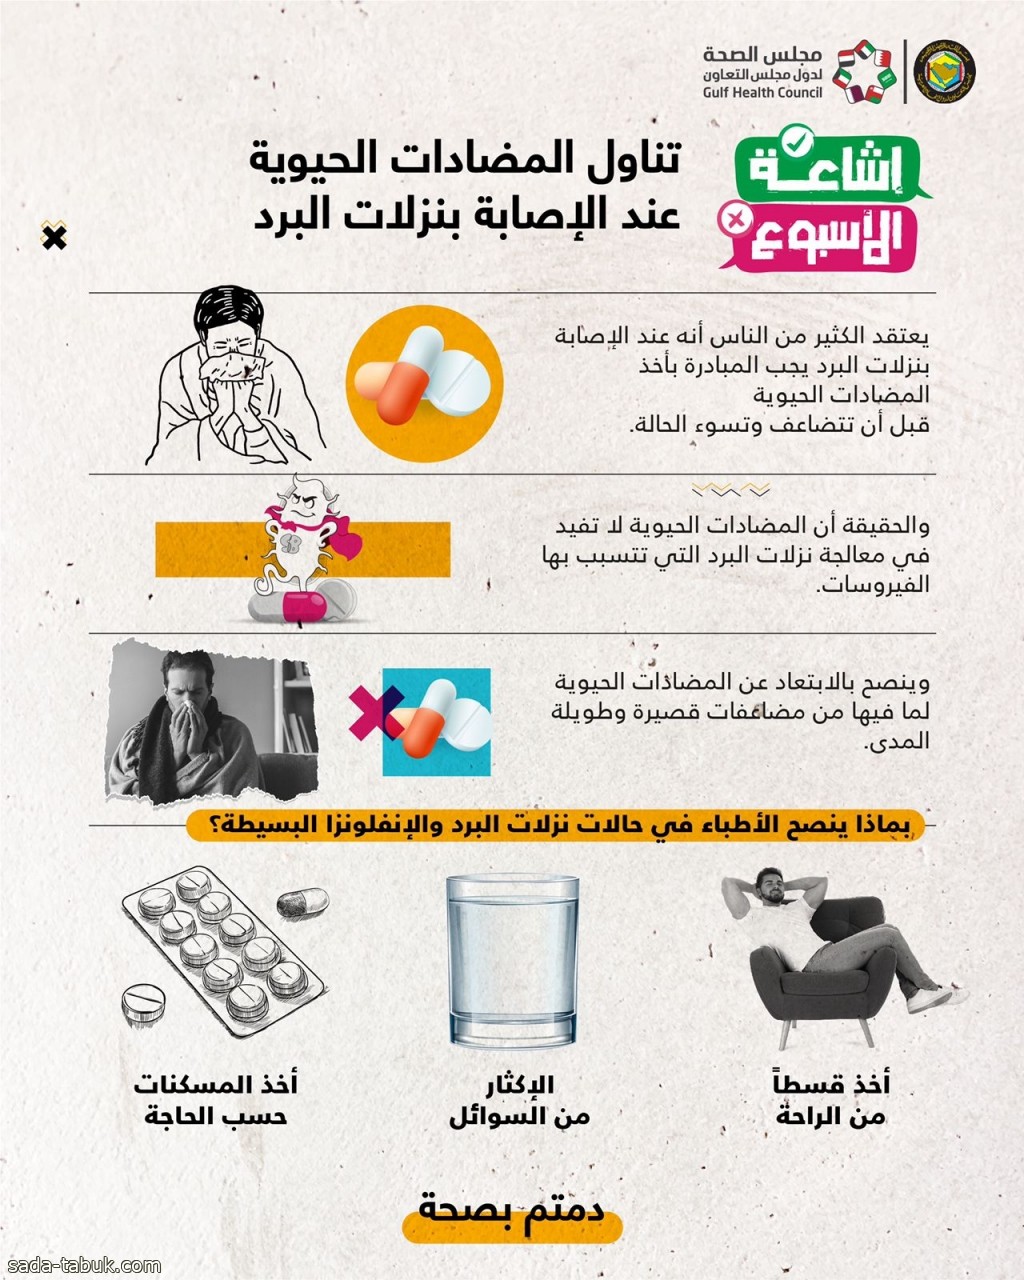 مجلس الصحة الخليجي : المضادات الحيوية لا تفيد مع نزلات البرد التي تسببها الفيروسات